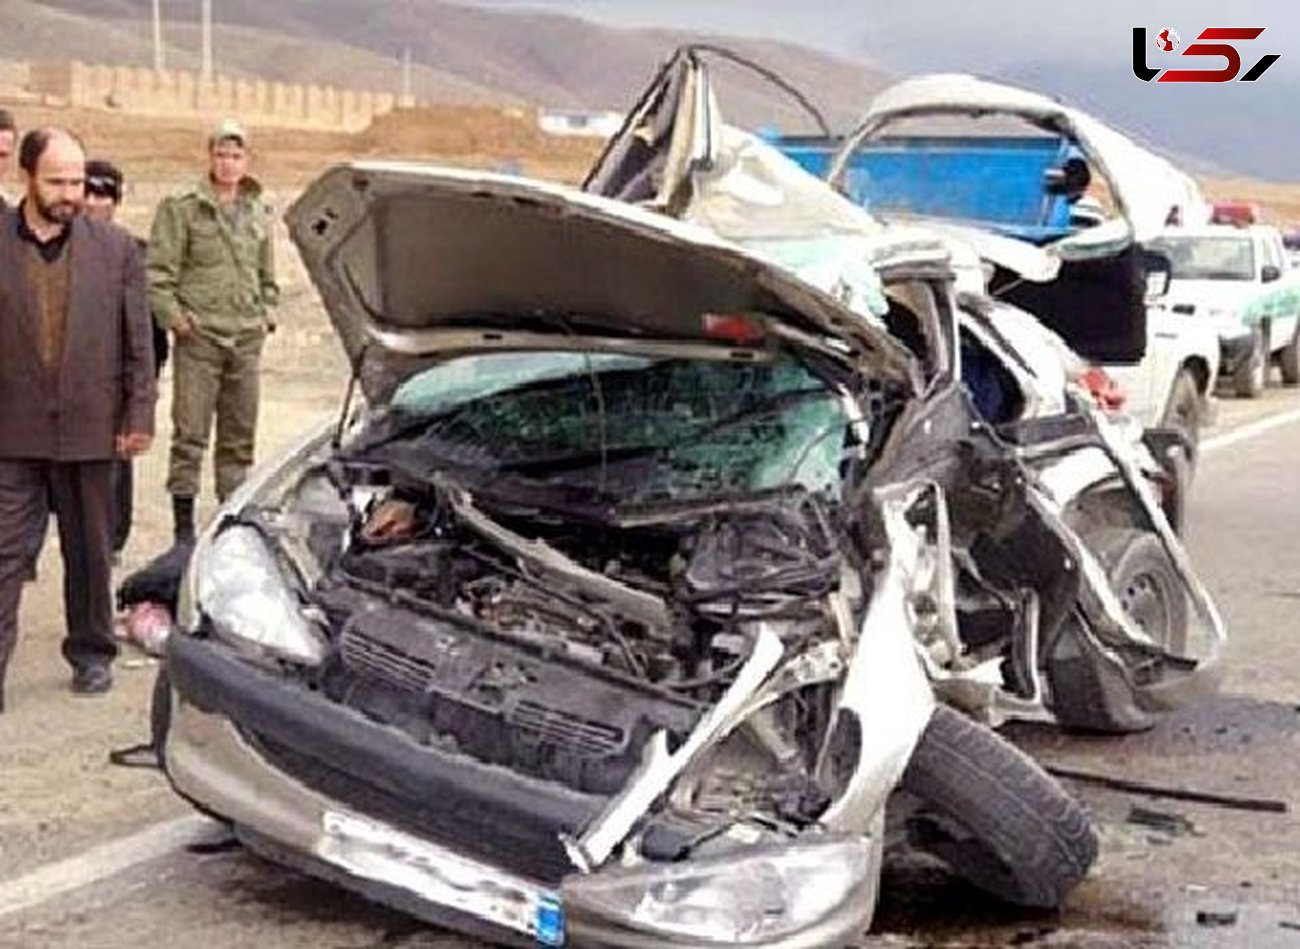 4 کشته در انحراف مرگبار خودرو